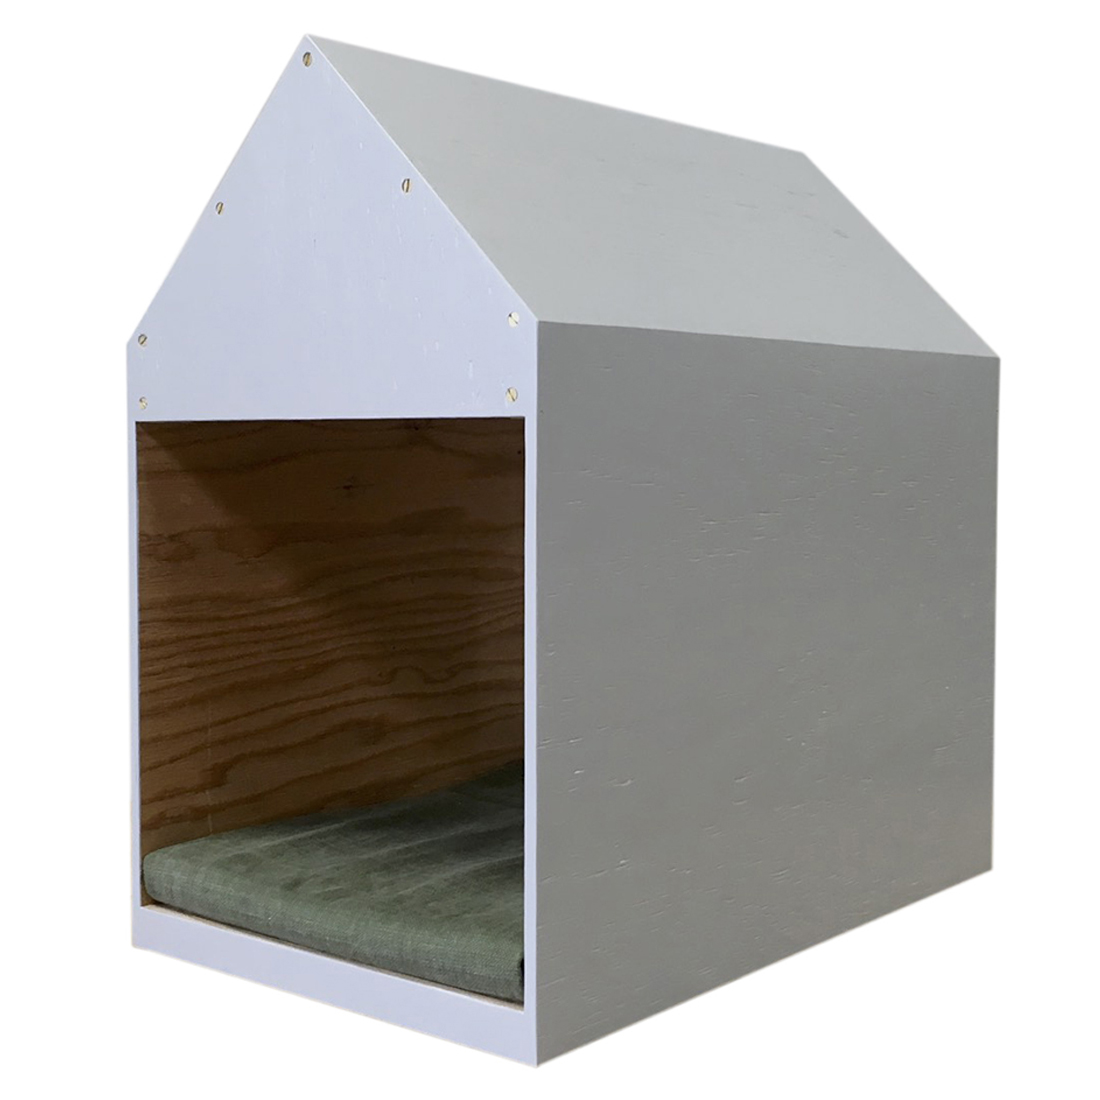 市場 ペットハウス 工具不要 マットセット かわいい ドッグハウス ウッドハウス 簡単組み立て 扉付き 室内 木製 犬小屋 猫小屋 おしゃれ